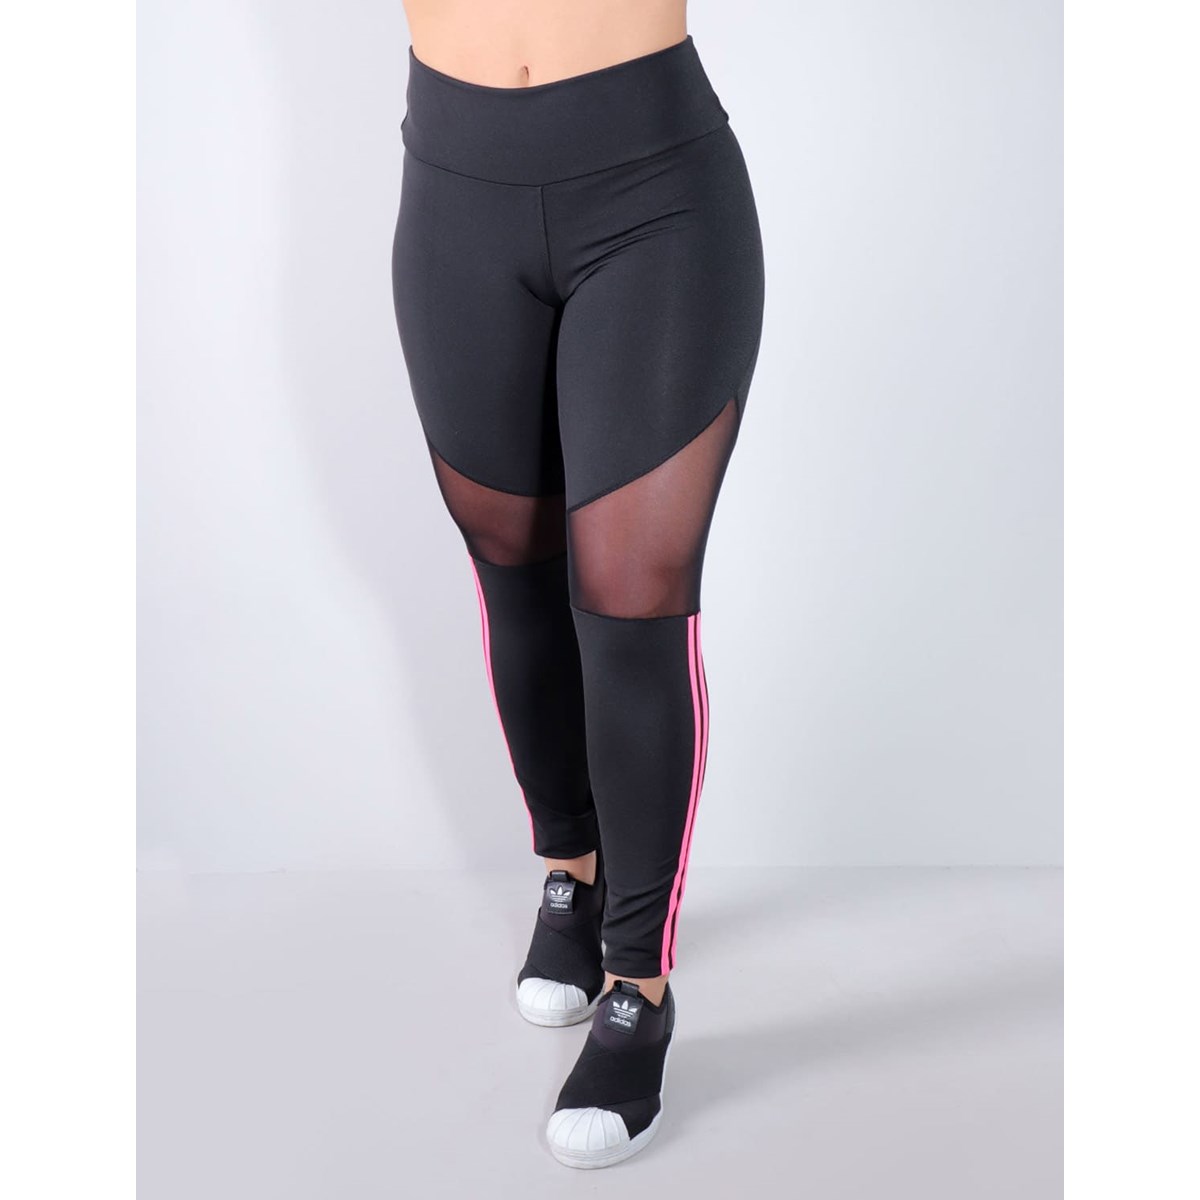 Calça Legging Preta com Tule e Listras Rosa Neon | Ref: 4.4.4340-0139